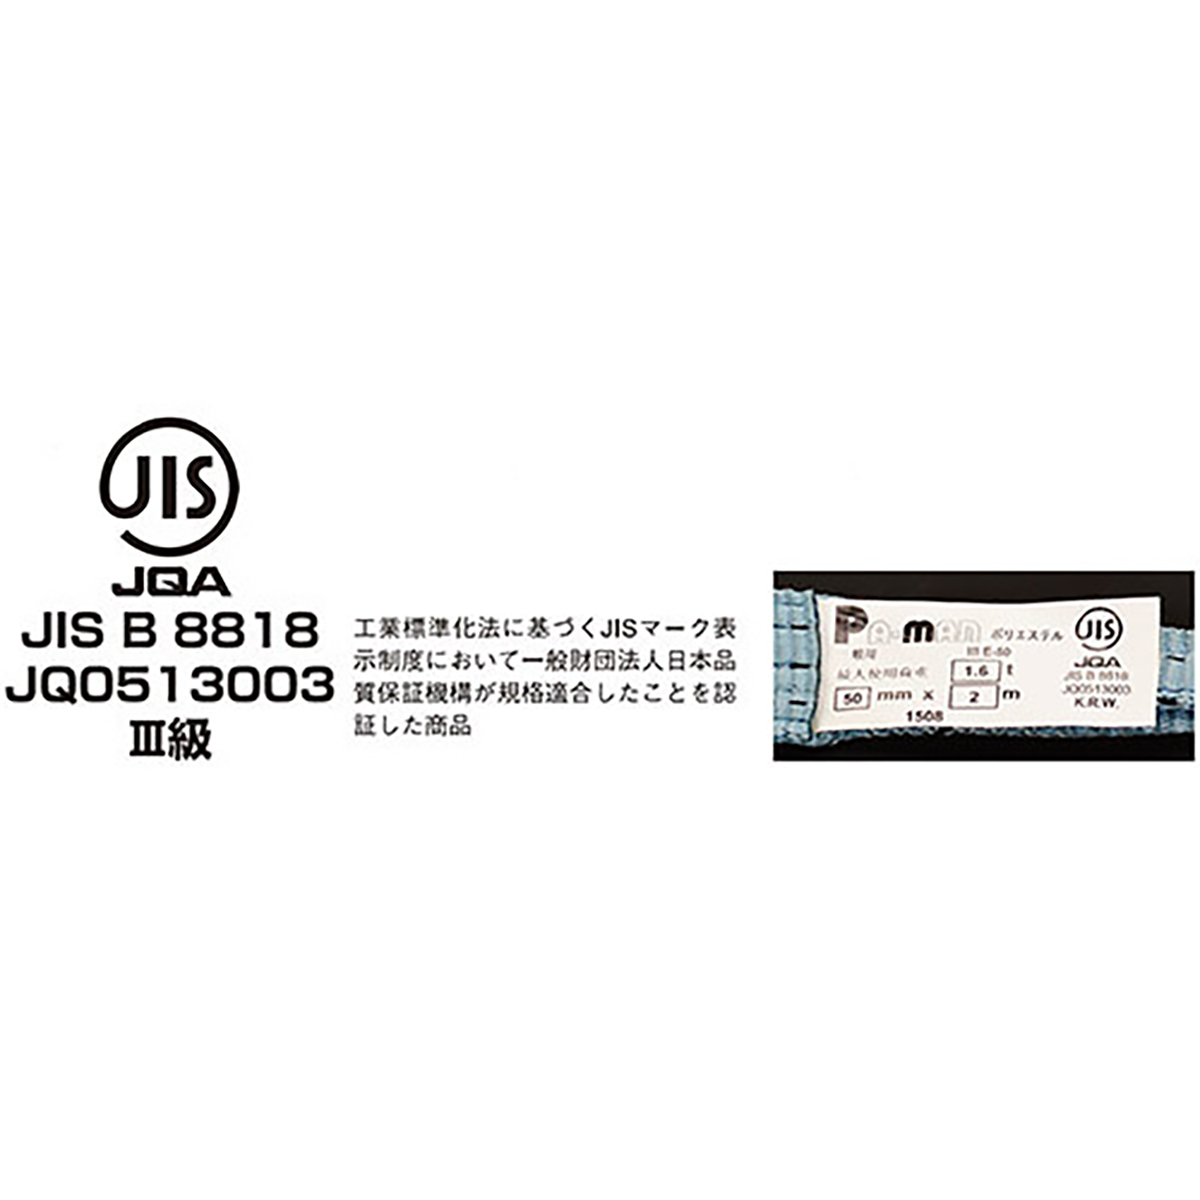 ポリベルトスリング JIS III級 ソフト面付 巾25mm 4m 1本